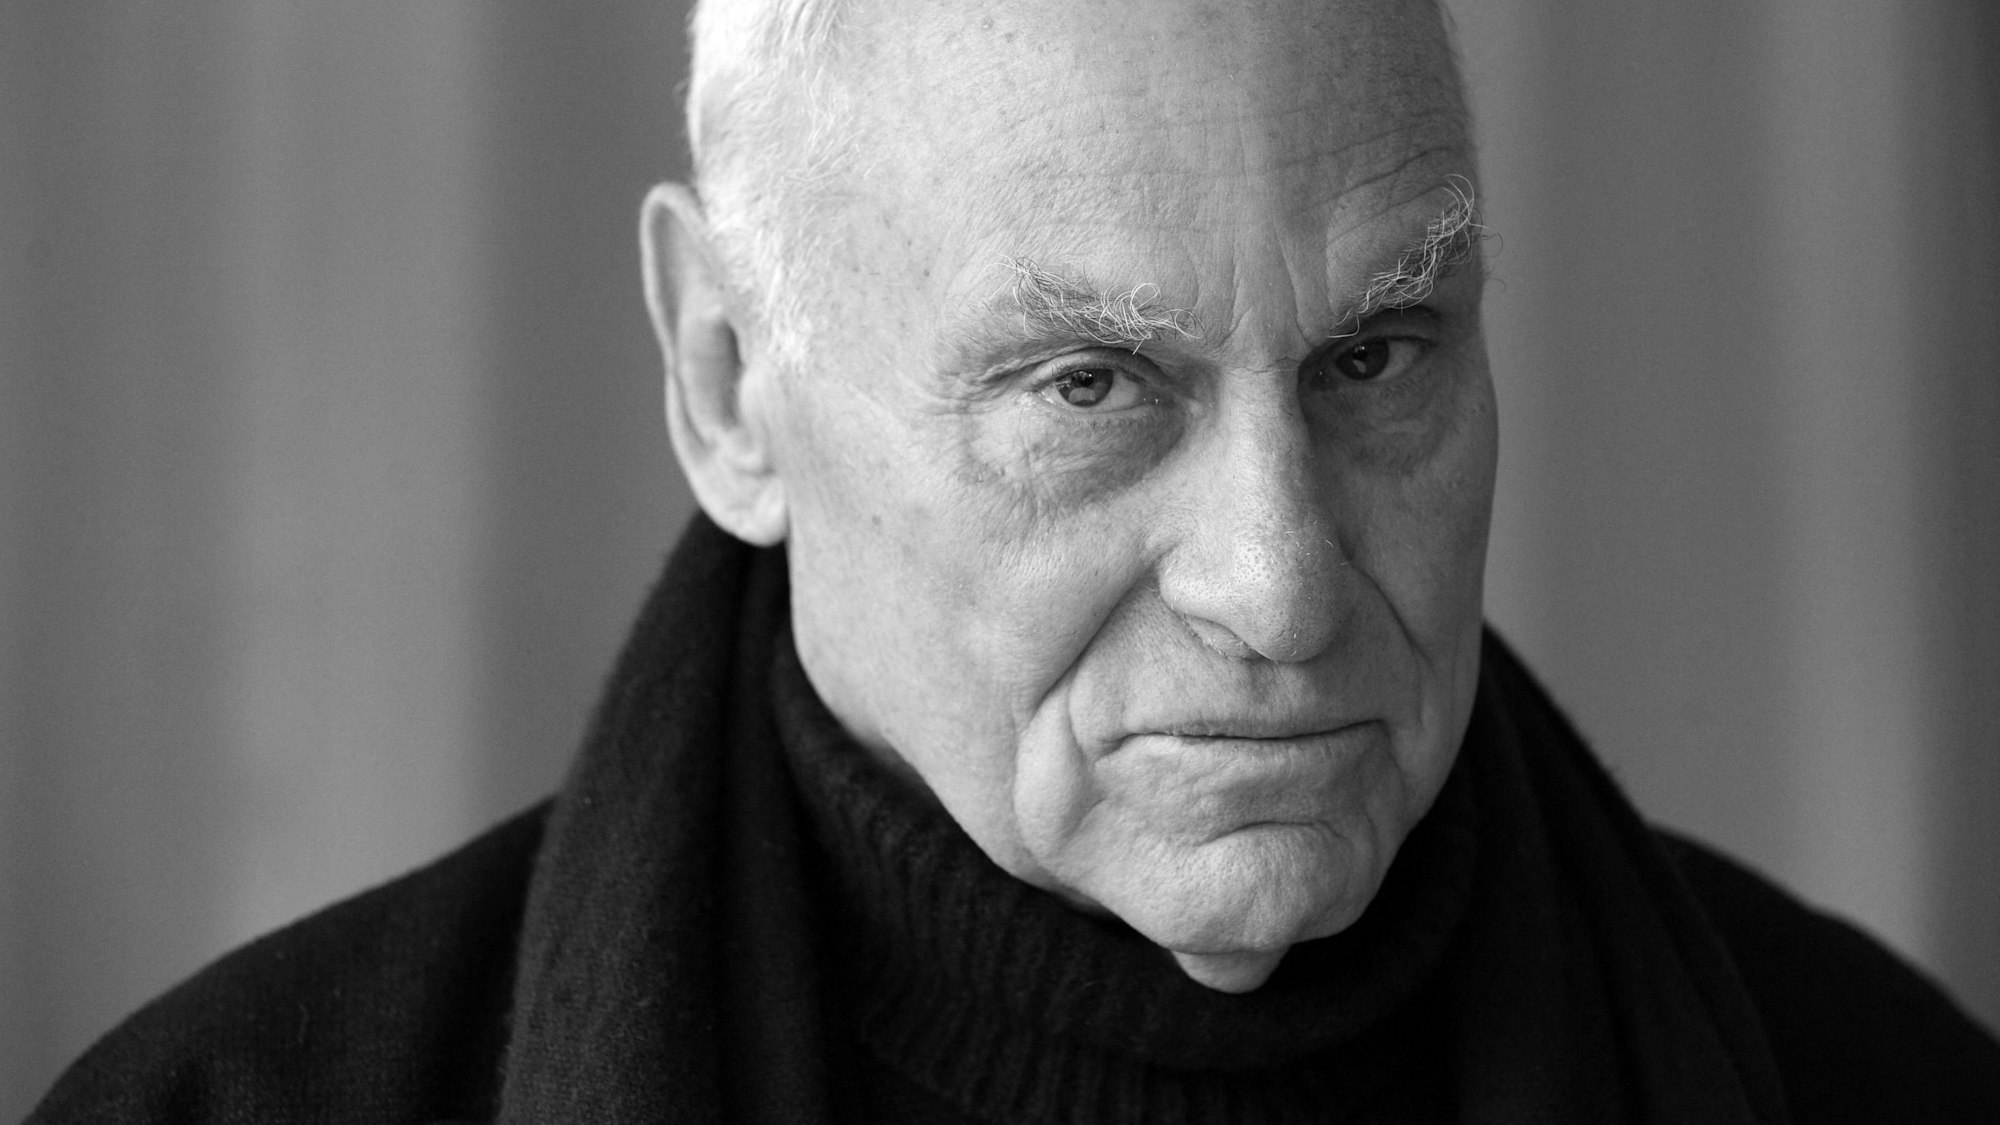 15.12.2008, Frankreich, La Défense: Der US-Künstler Richard Serra steht vor der Einweihung seines Werks "Slat" in La Defense bei Paris. Serra, der mit teils riesigen Stahlskulpturen zu einem der wichtigsten und erfolgreichsten Bildhauer der Welt wurde, ist im Alter von 85 Jahren gestorben. Das bestätigte sein Anwalt John Silberman am Dienstagabend (Ortszeit) der Deutschen Presse-Agentur. Foto: Bertrand Guay/AFP/dpa +++ dpa-Bildfunk +++